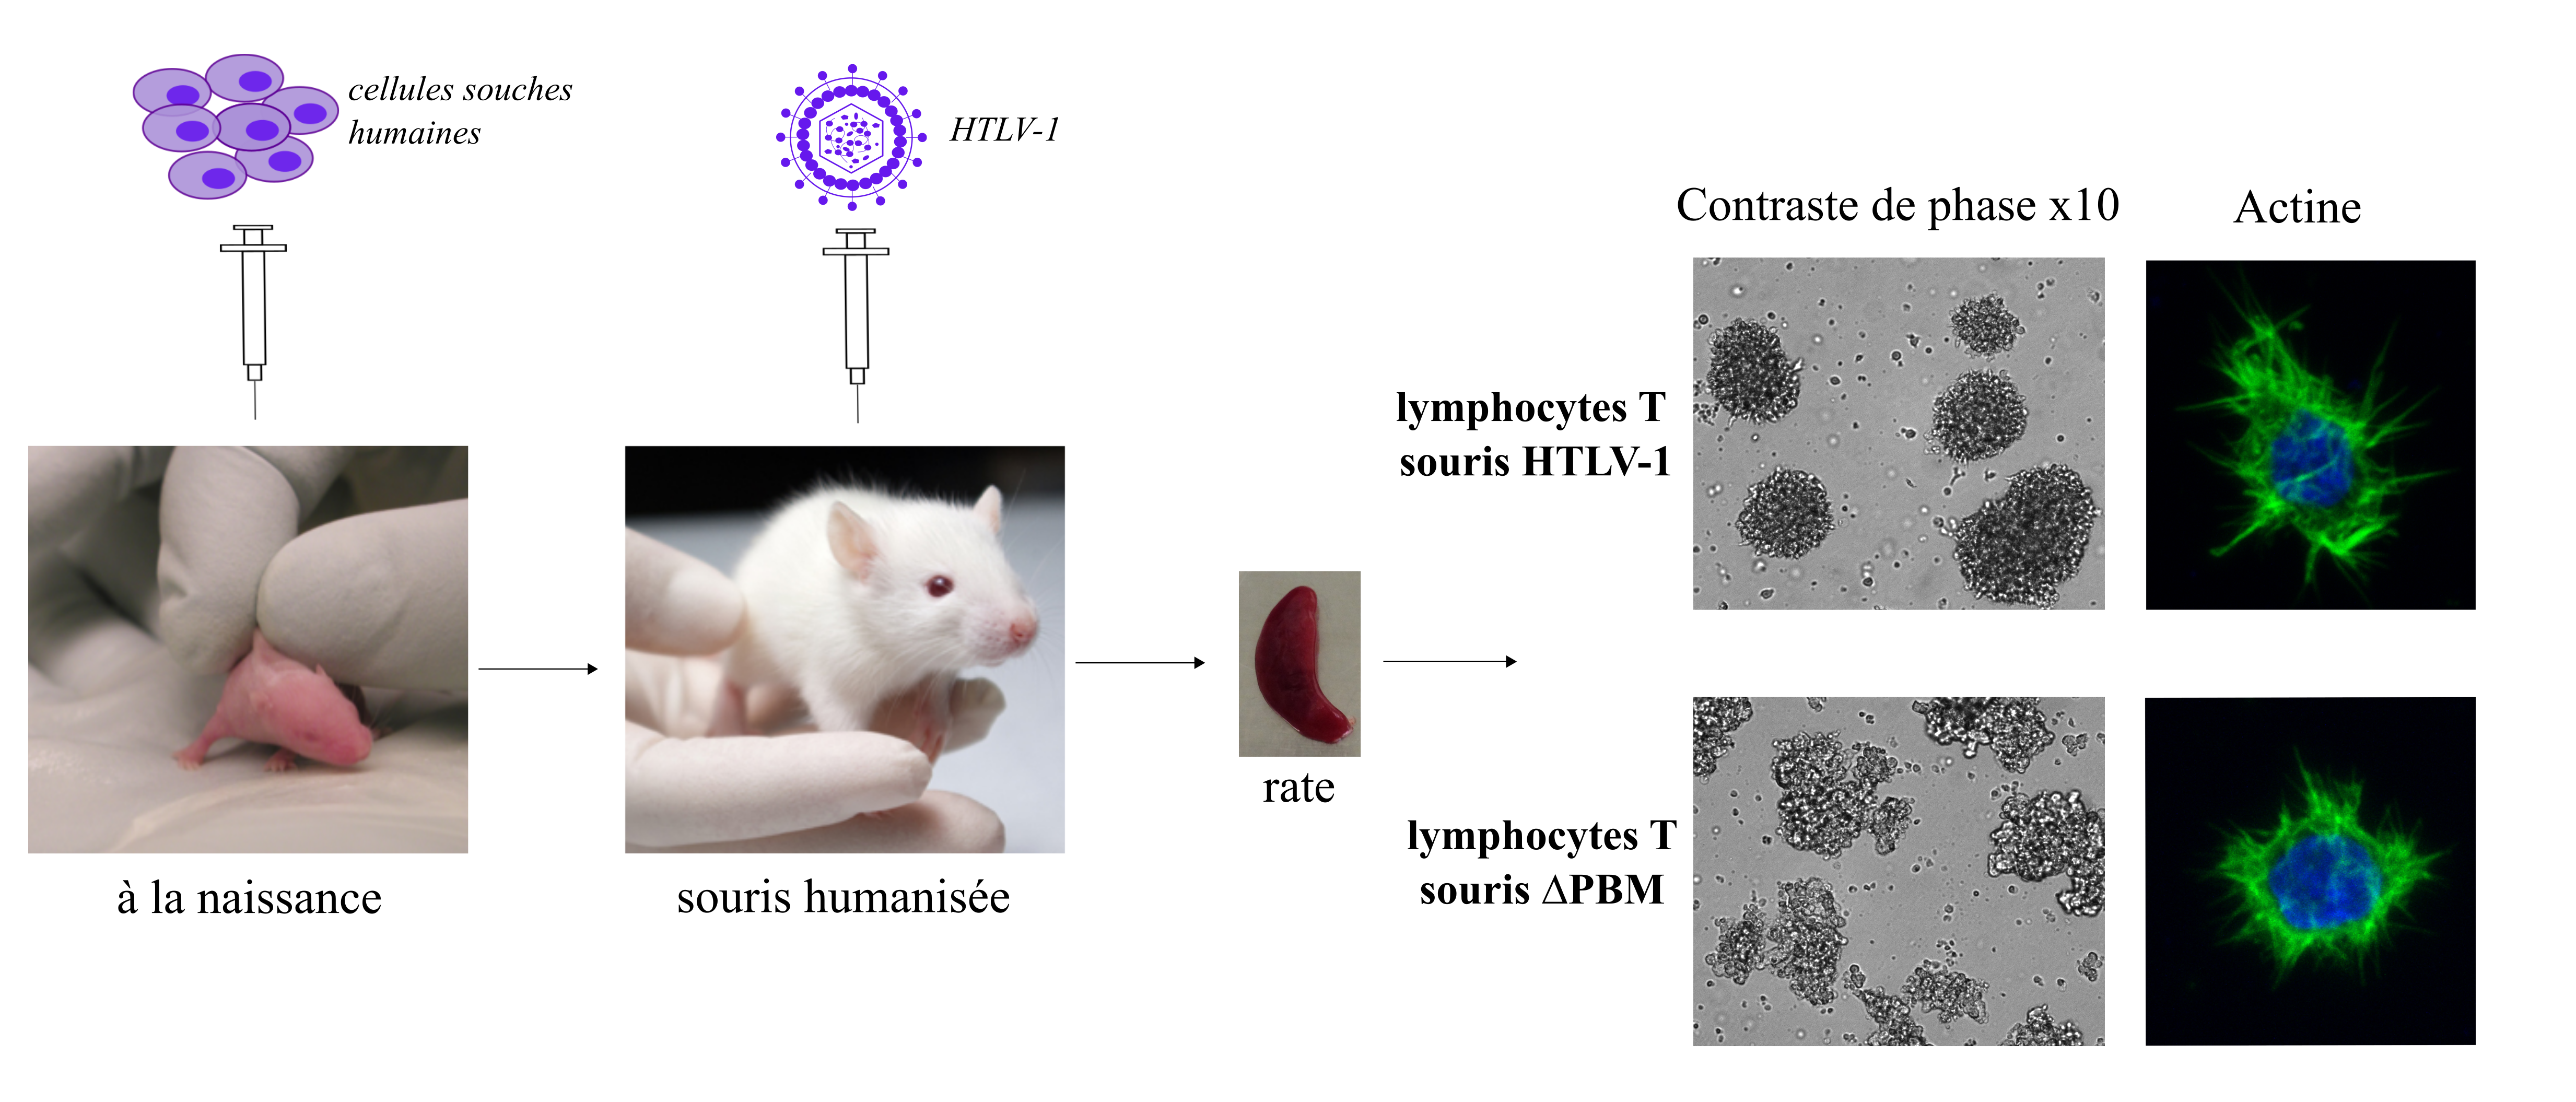 Les lymphocytes T isolés à partir de la rate des souris humanisées infectées par HTLV-1 ∆PBM forment des amas irréguliers en culture et sont de forme ronde.